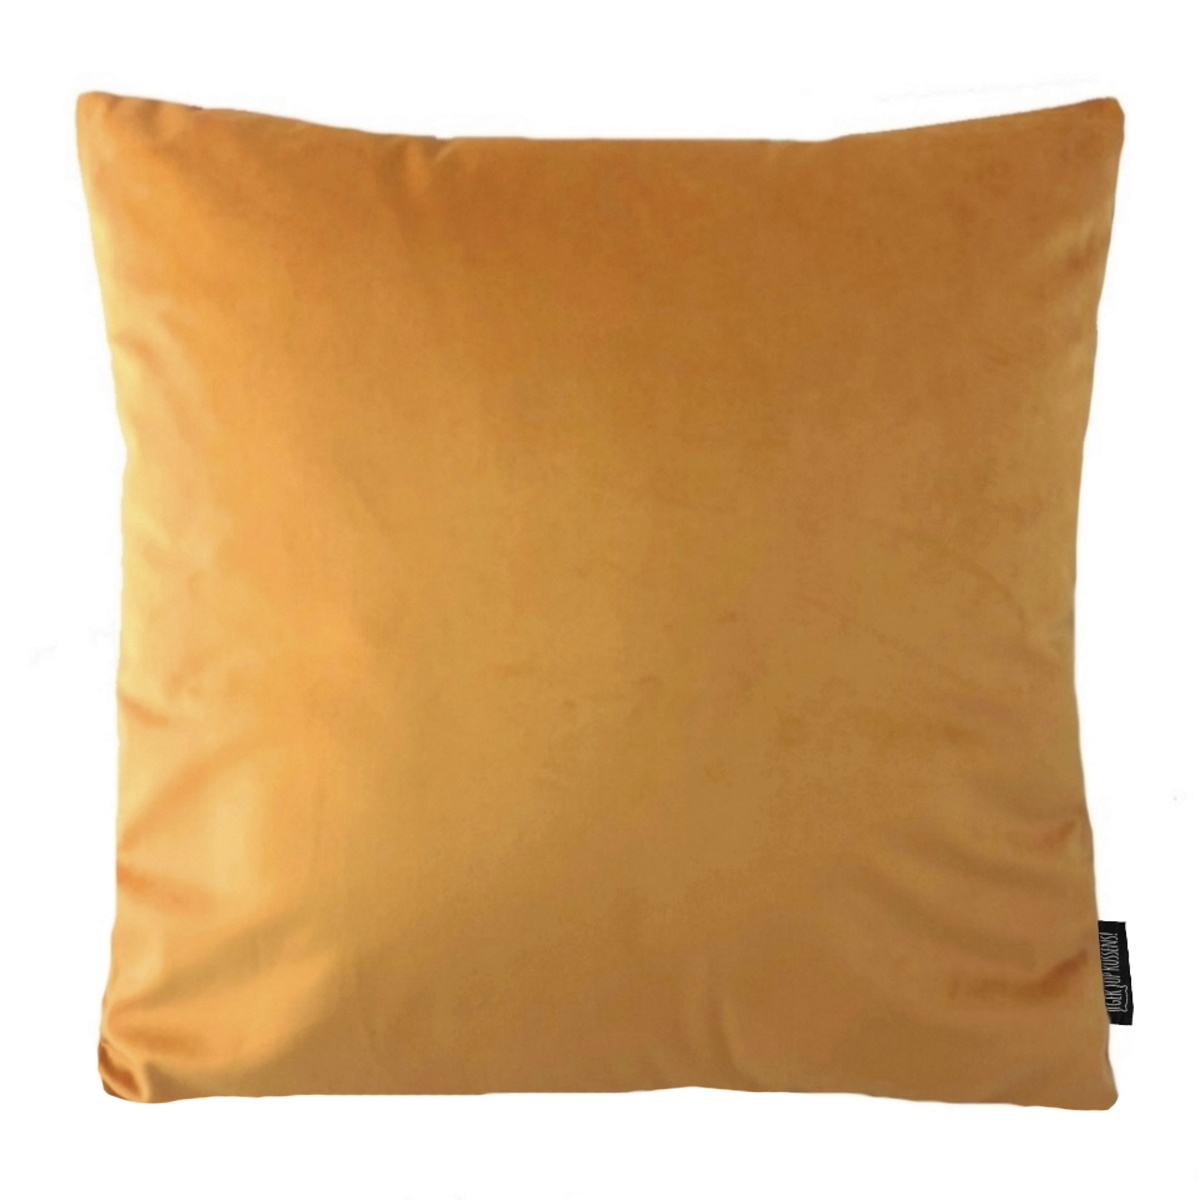 Sterkte herberg dividend Velvet Oranje / Goud | 45 x 45 cm | Kussenhoes | Polyester | Gek op kussens!